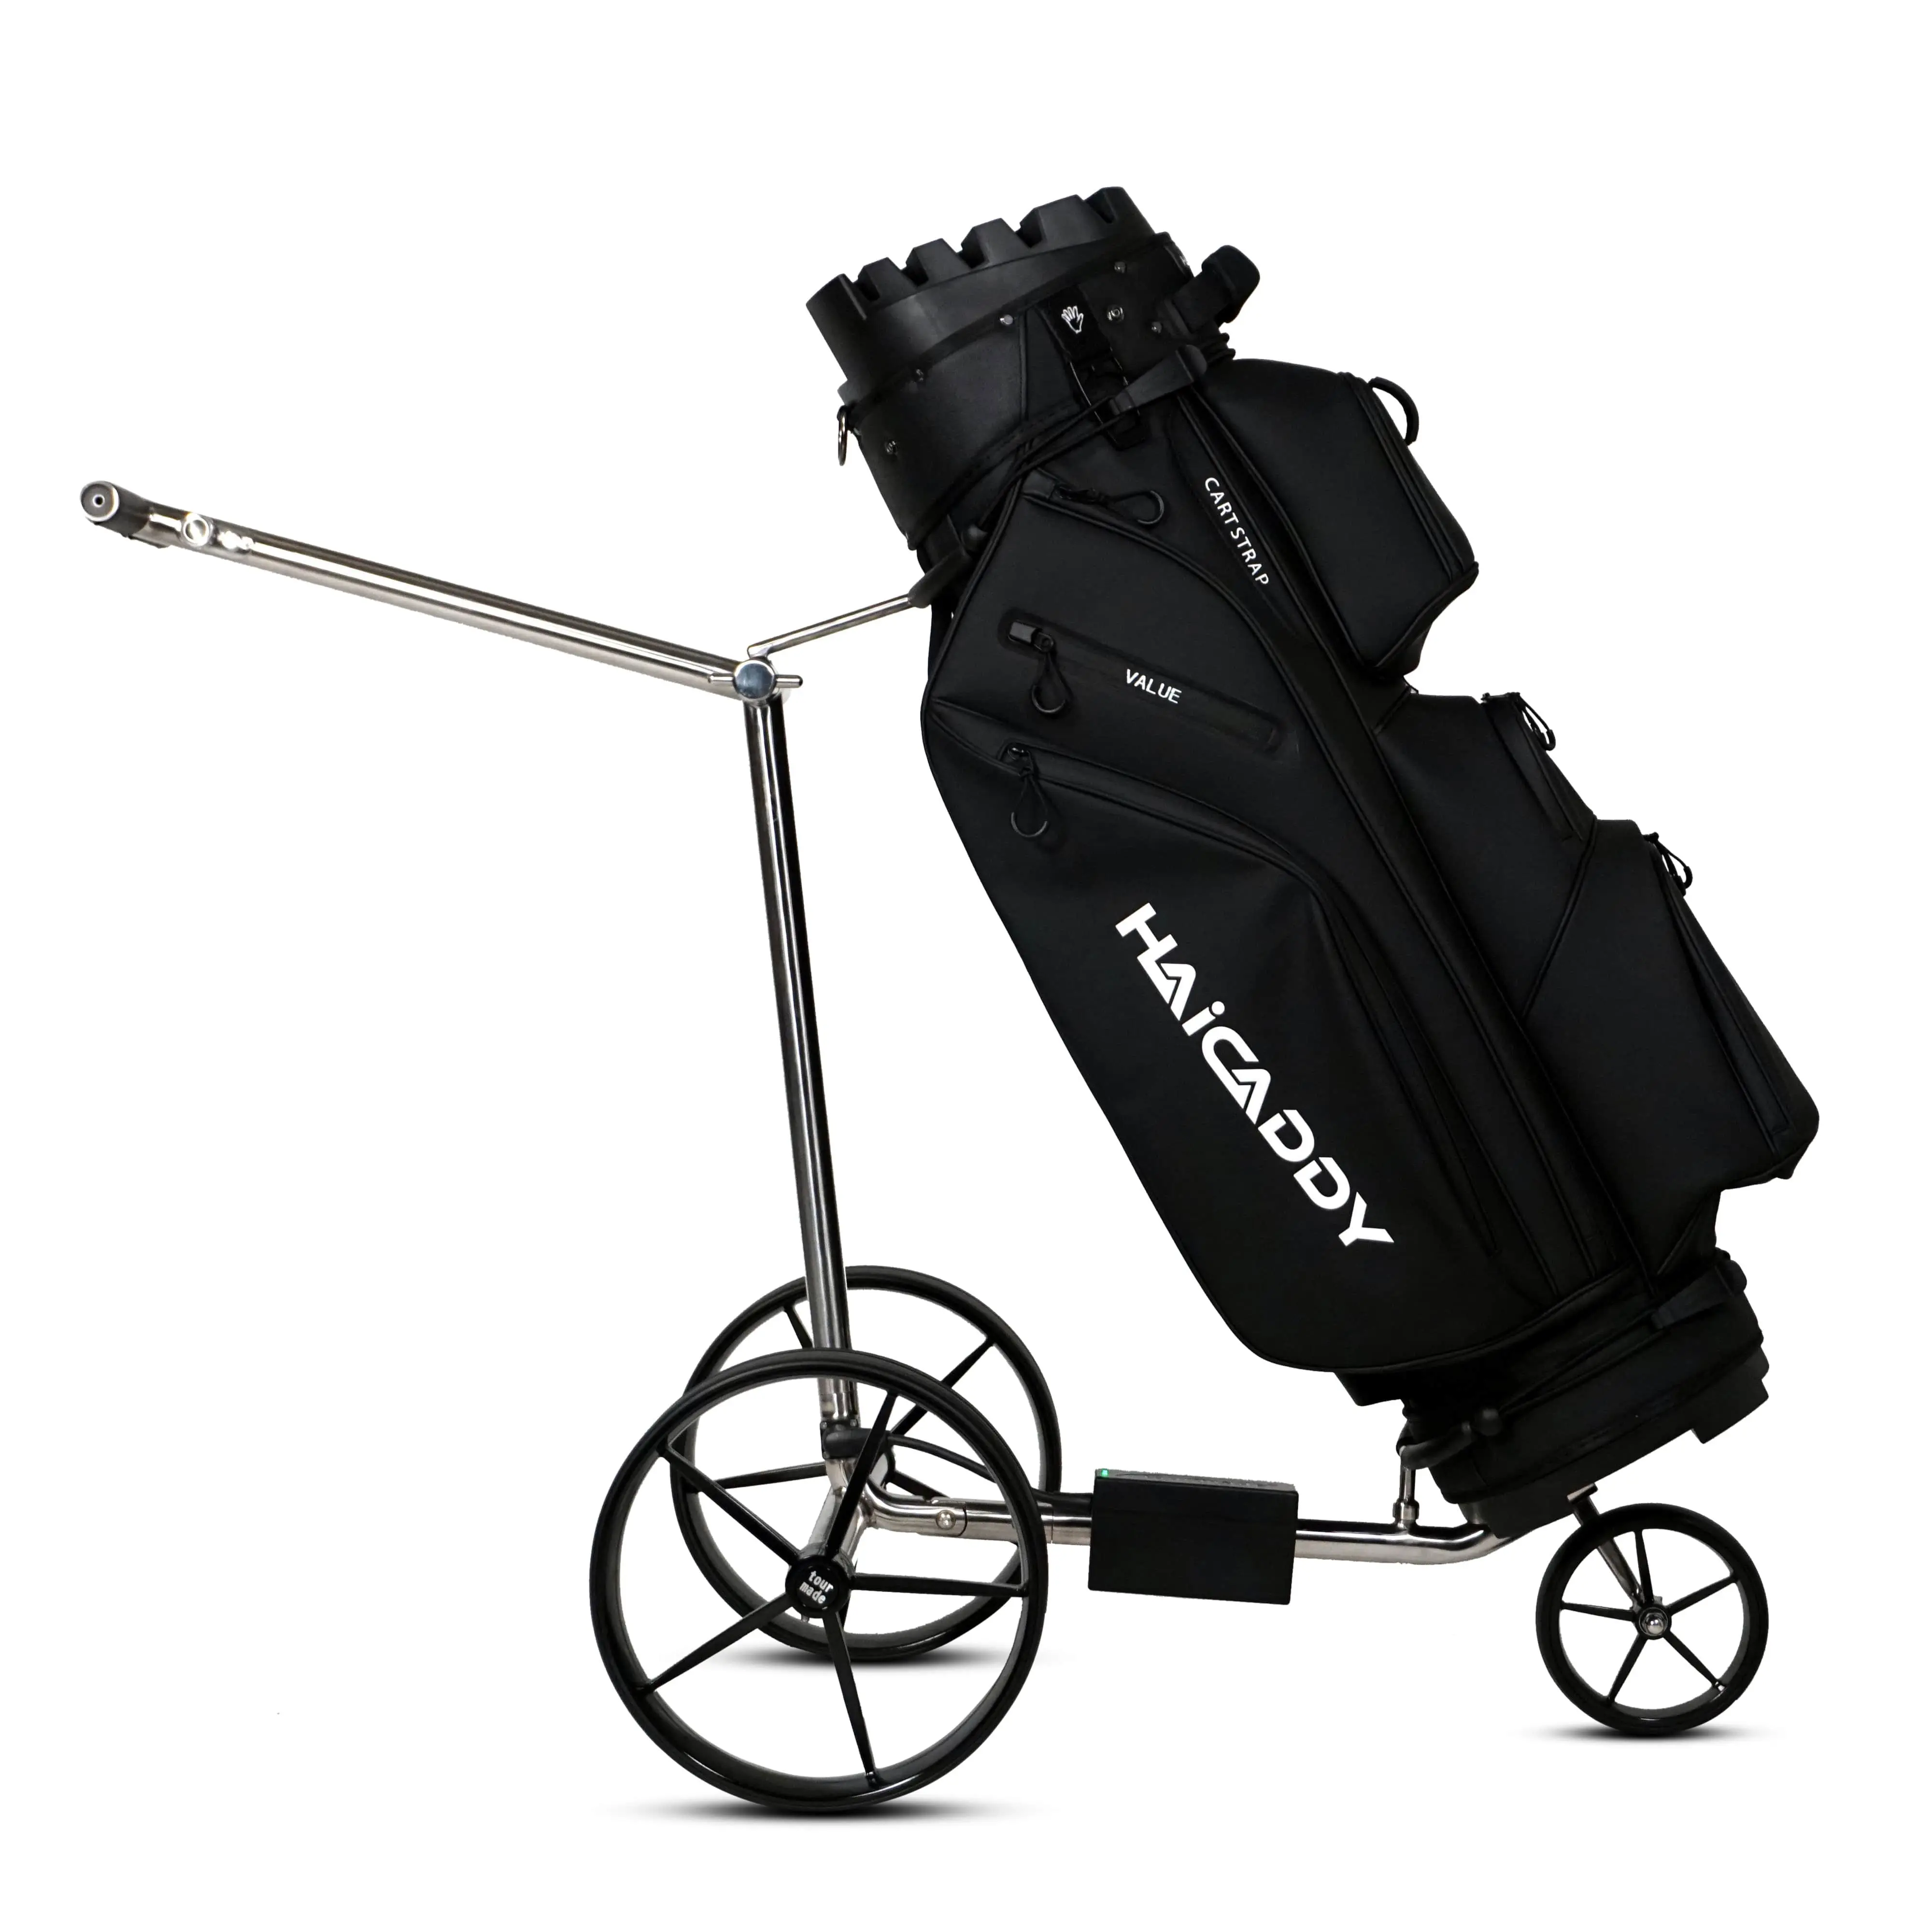 Chariot de golf électrique Tour Made Haicaddy® HC9